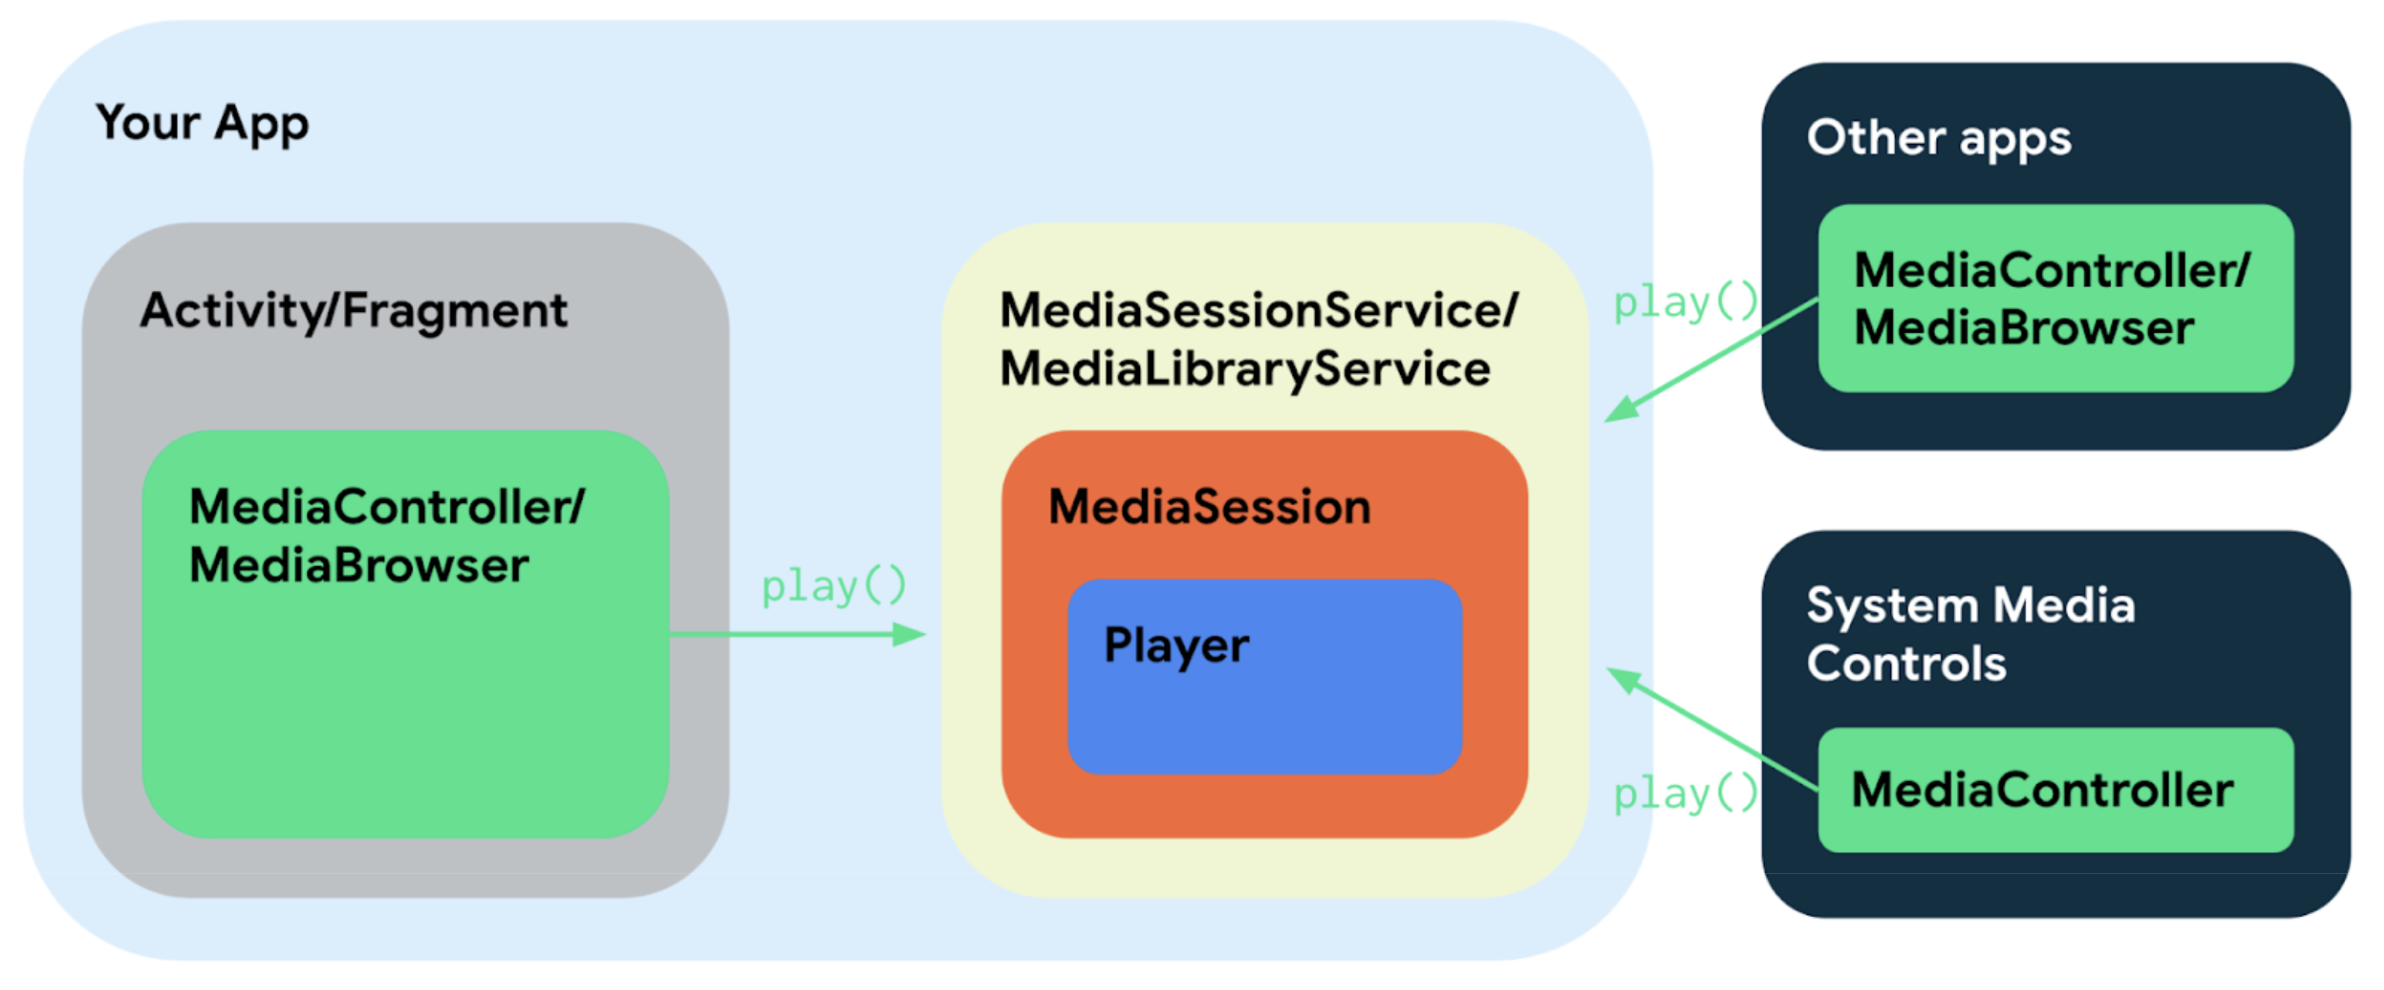 Diagramm der App-Komponenten mit Dienst, Aktivität und externen Apps